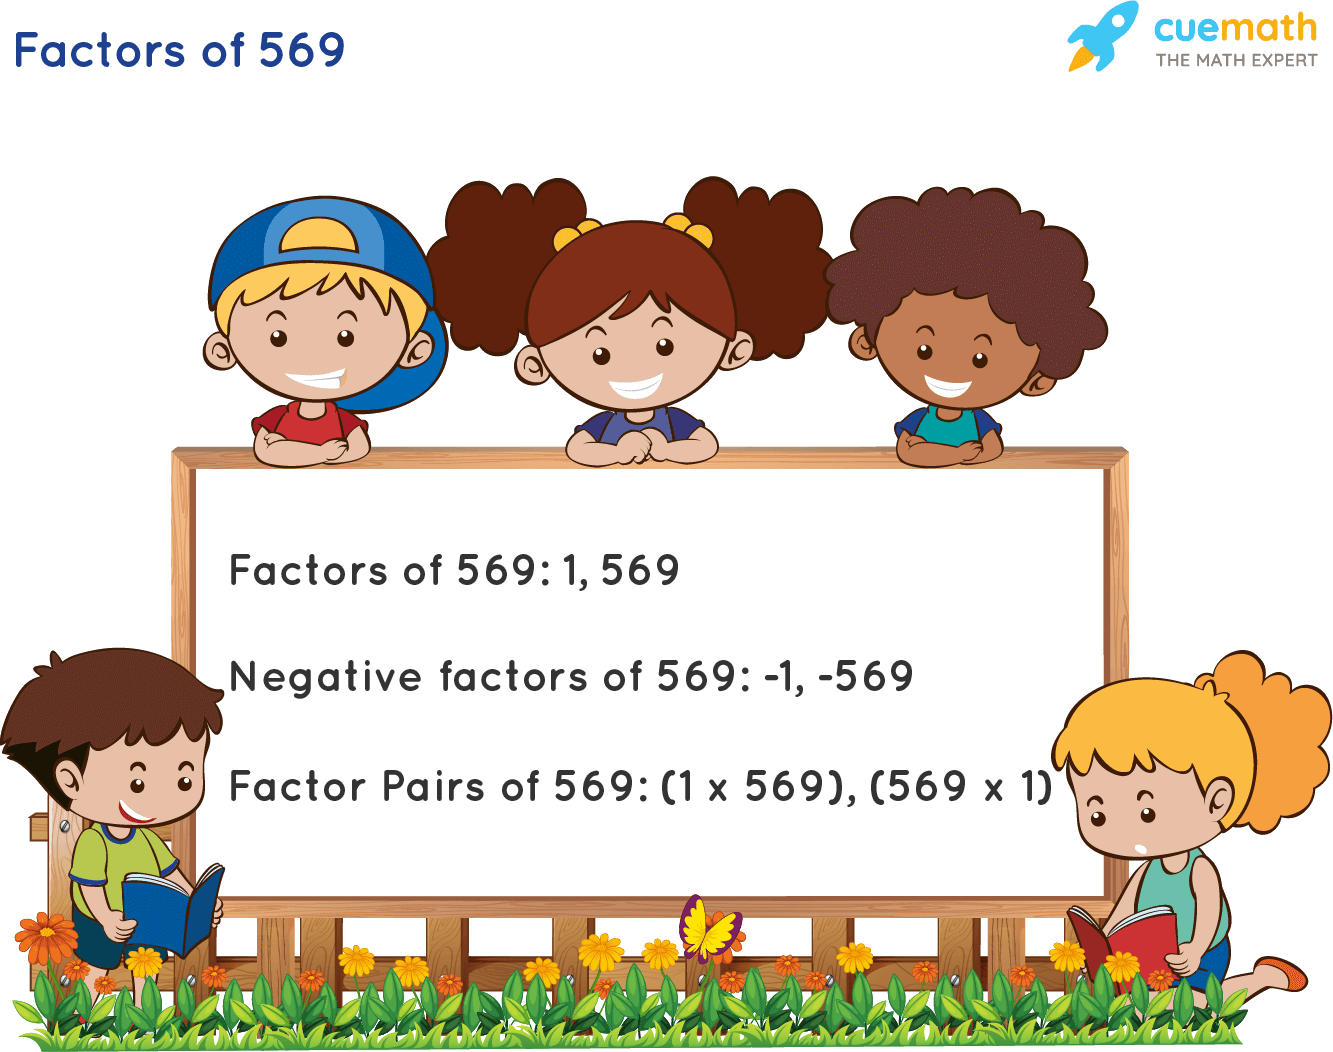 Factors of 569